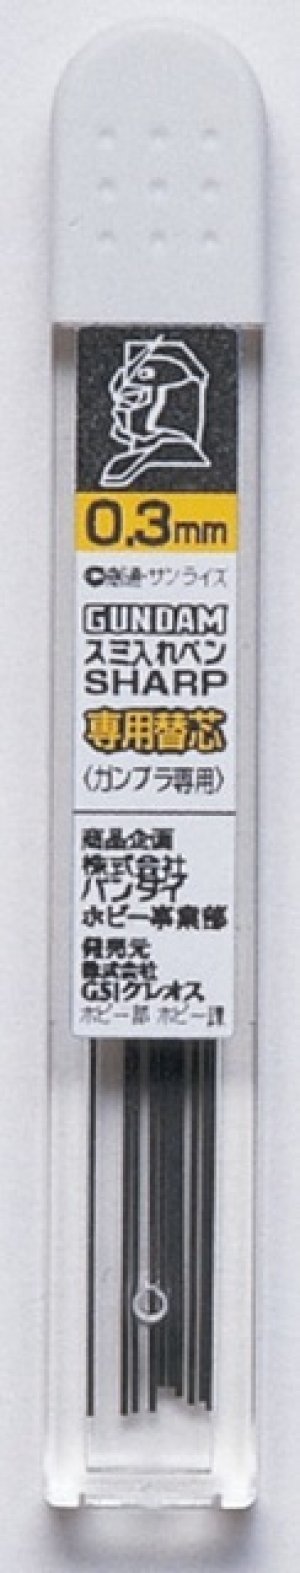 画像1: 【ネコポス対応】クレオス/GP02/ガンダムマーカー スミいれペン シャープ用替え芯